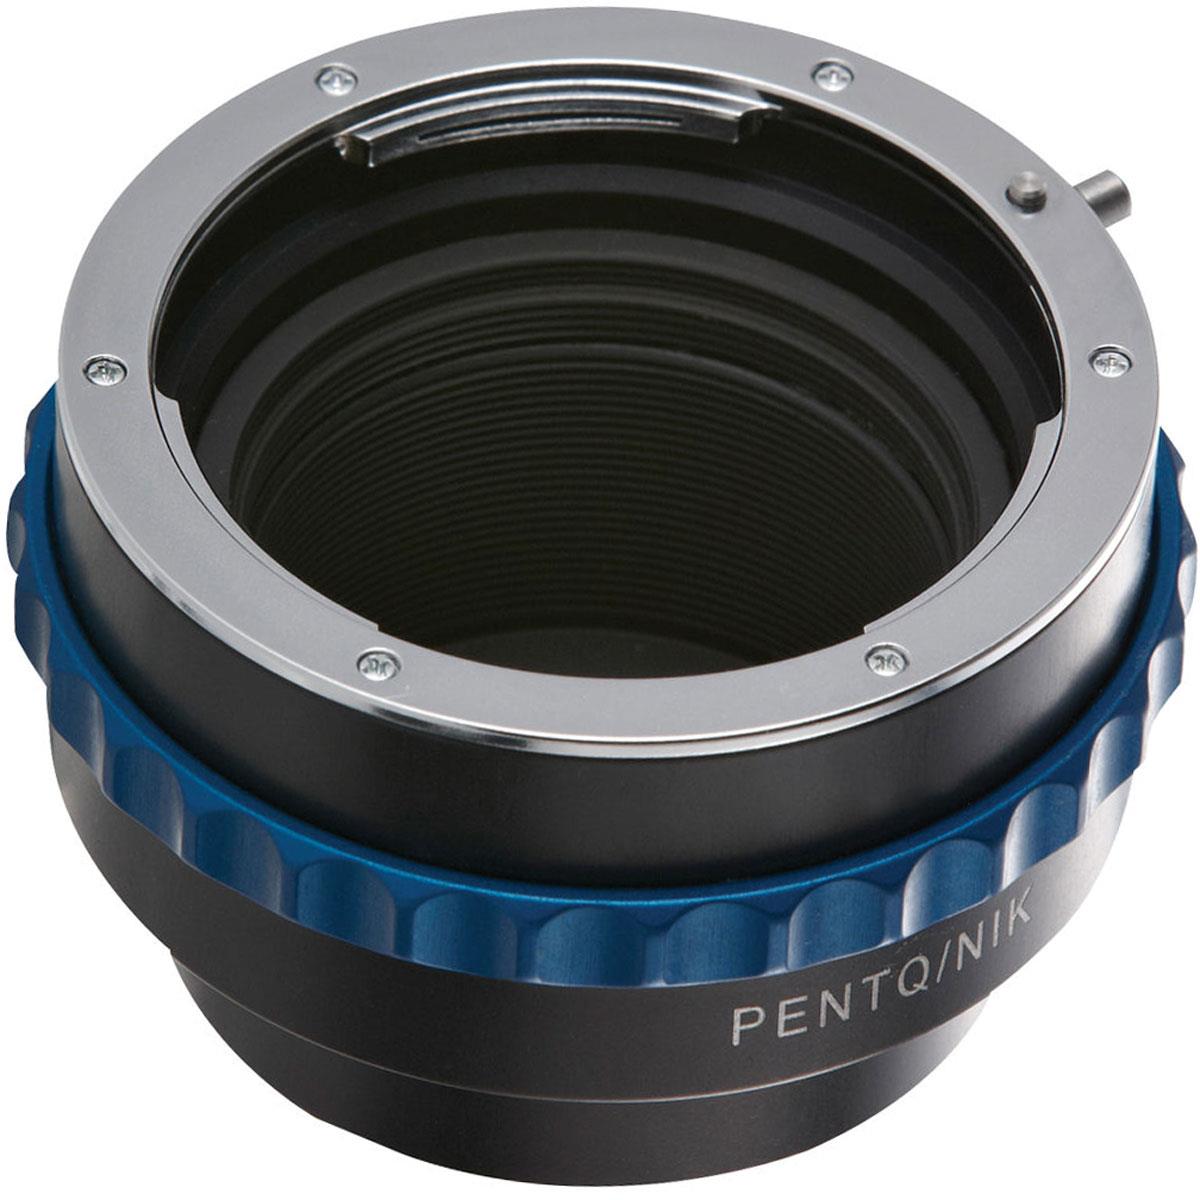 

Novoflex Adapter for Nikon Lenses to Pentax Q Cameras